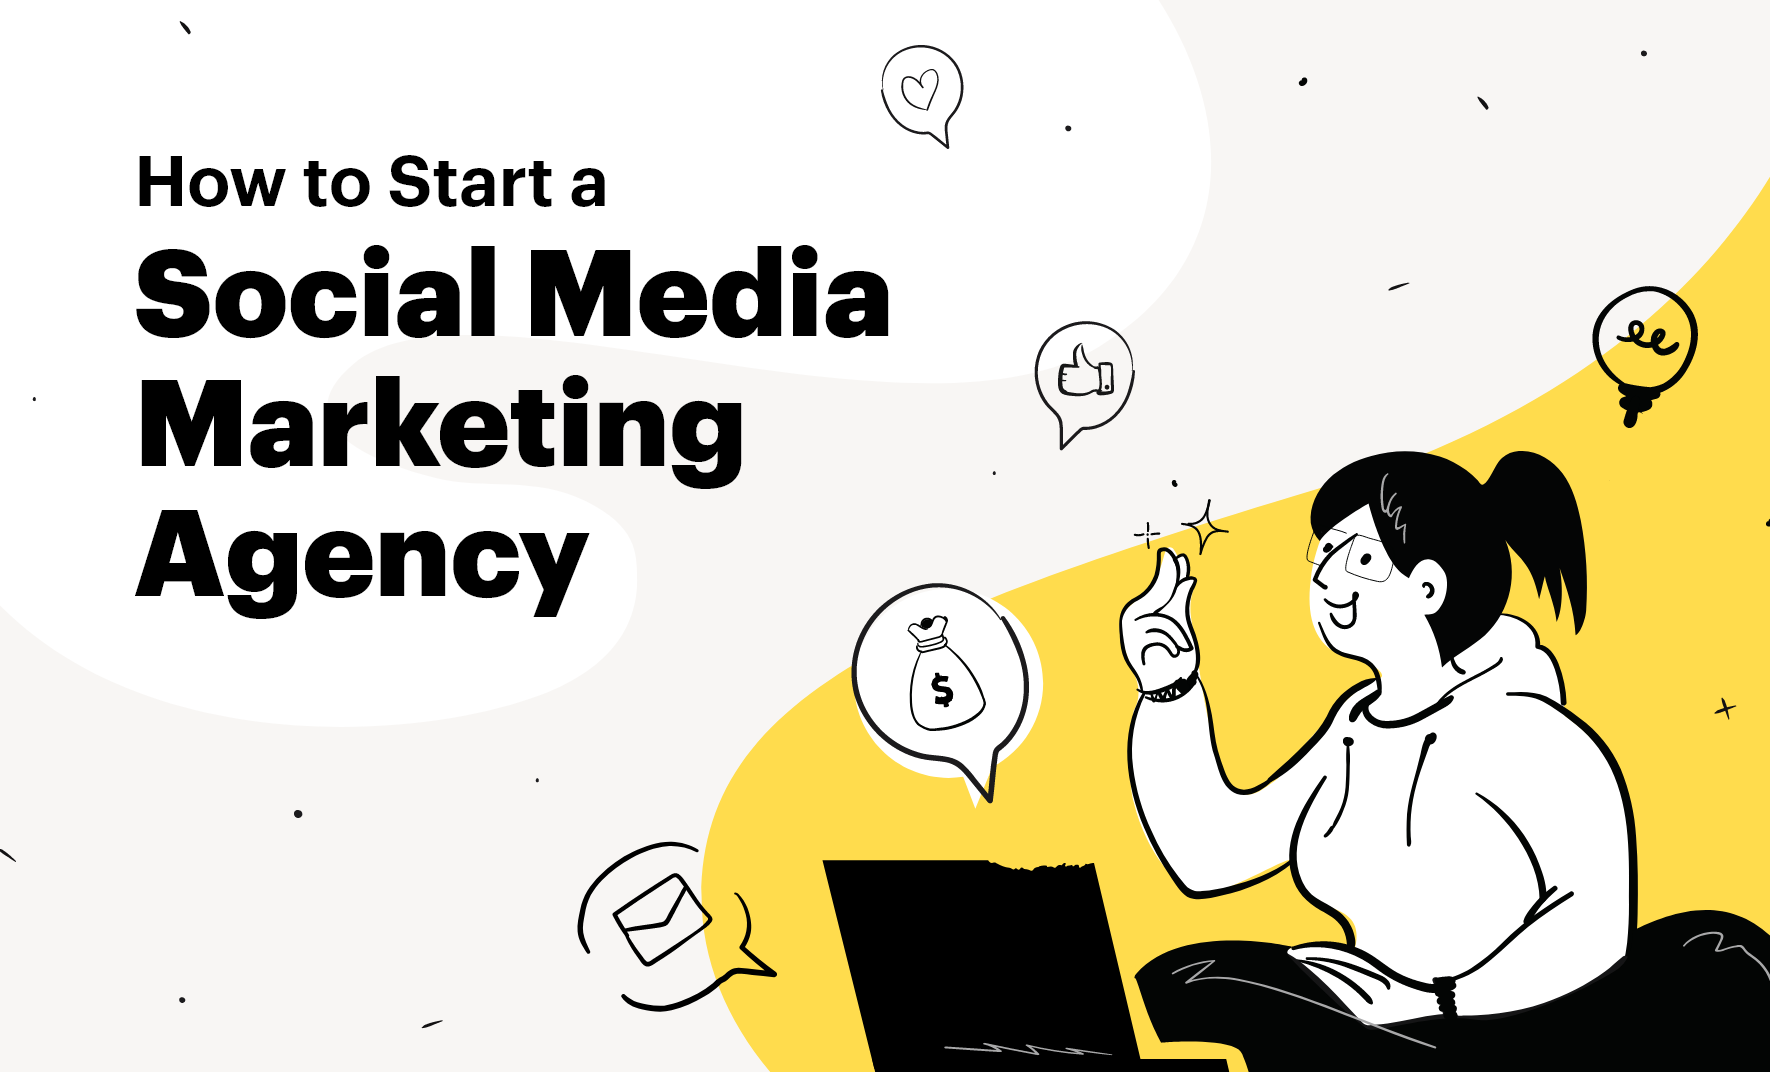 Start a Social Media Marketing Agency